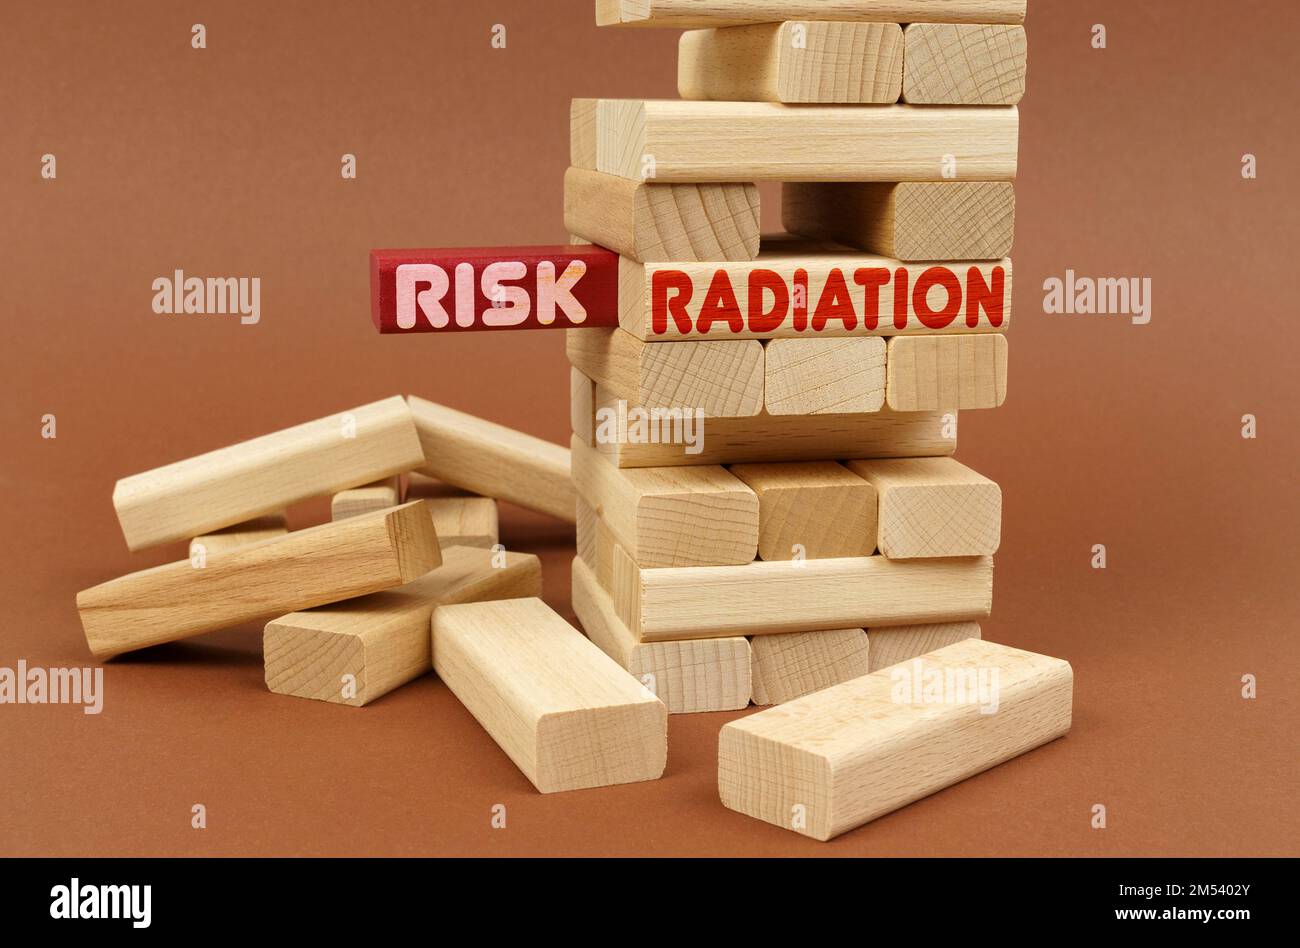 Industriekonzept. Es gibt einen Holzturm auf einer braunen Oberfläche. Auf dem roten Block befindet sich die Aufschrift „Risk“ (Risiko), auf dem nächsten Block „Radiation“ (Strahlung) Stockfoto